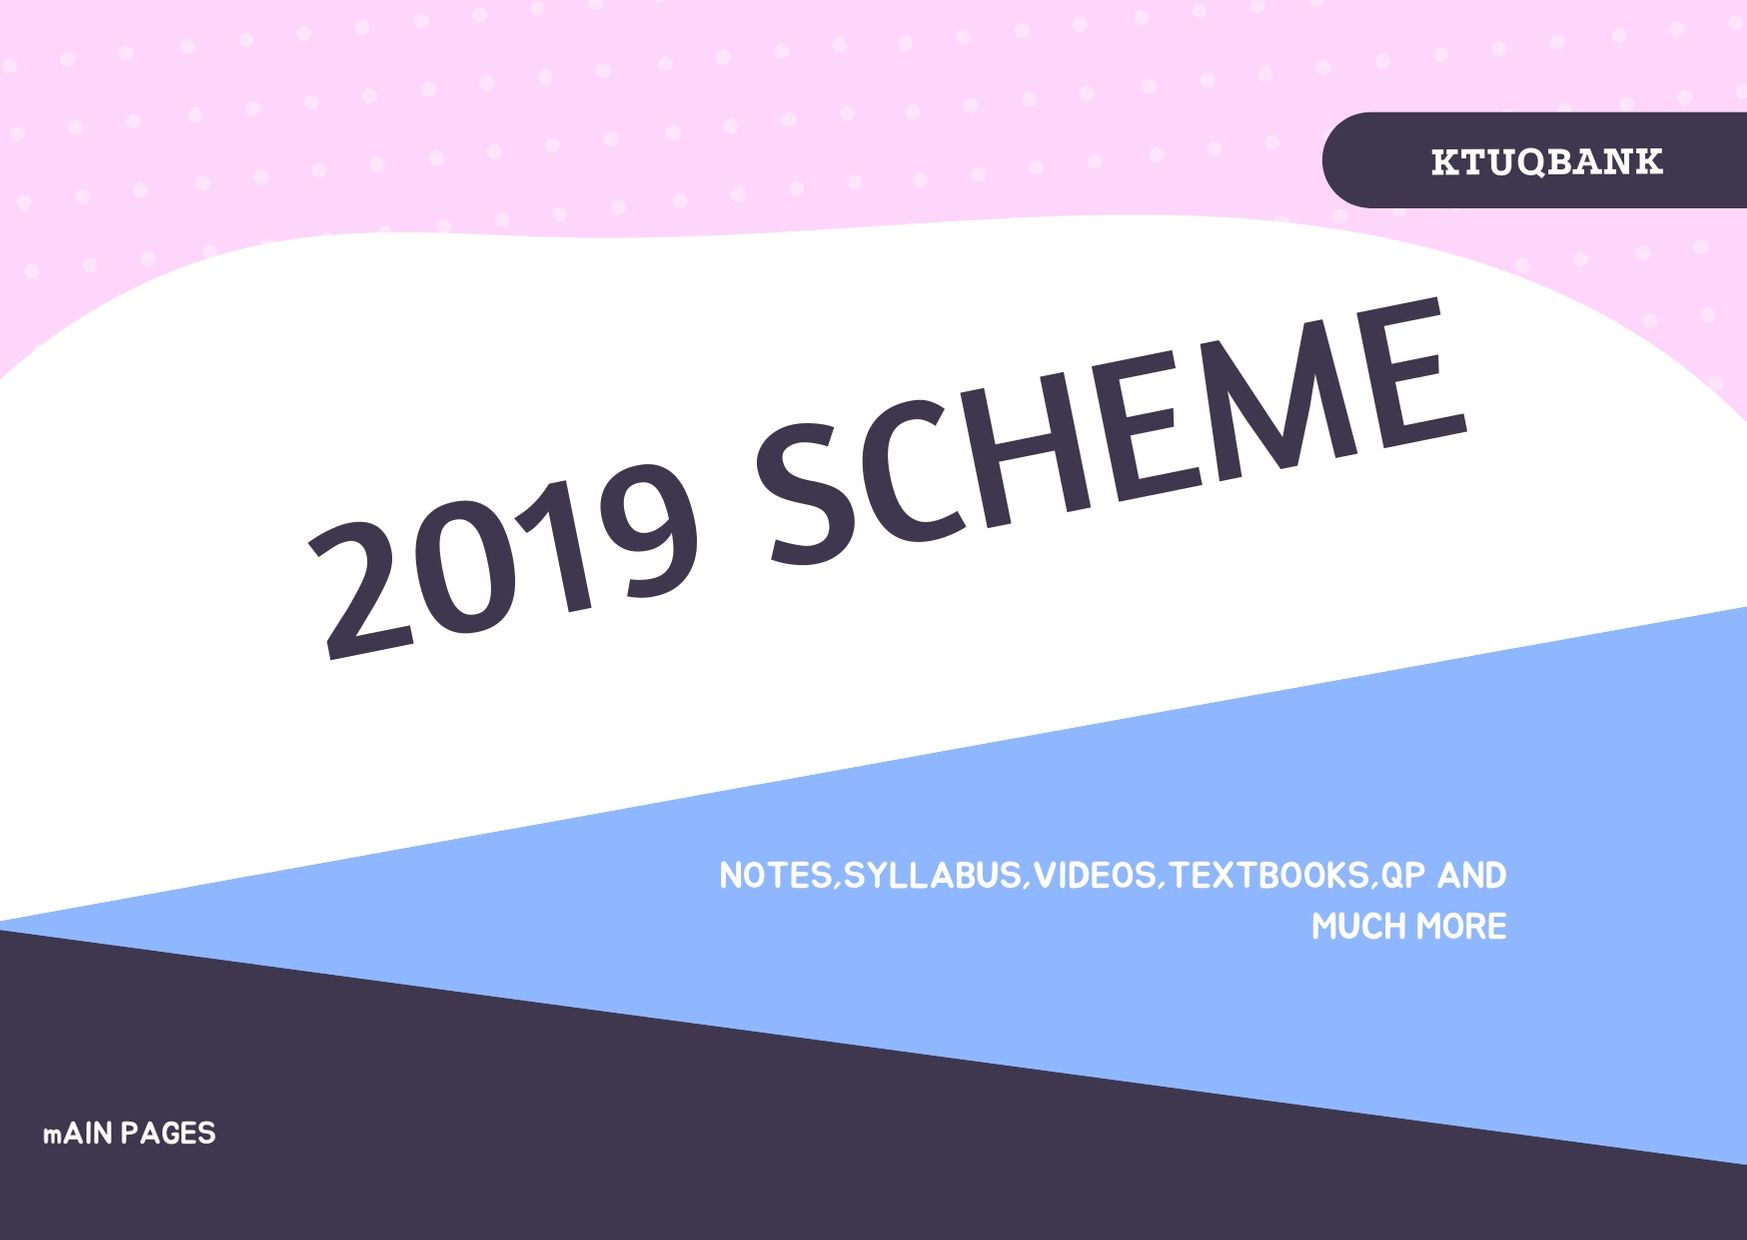 B.Tech 2019 Scheme | Notes | S1 | S2 | S3 | S4 | S5 | S6 | S7 | S8 |